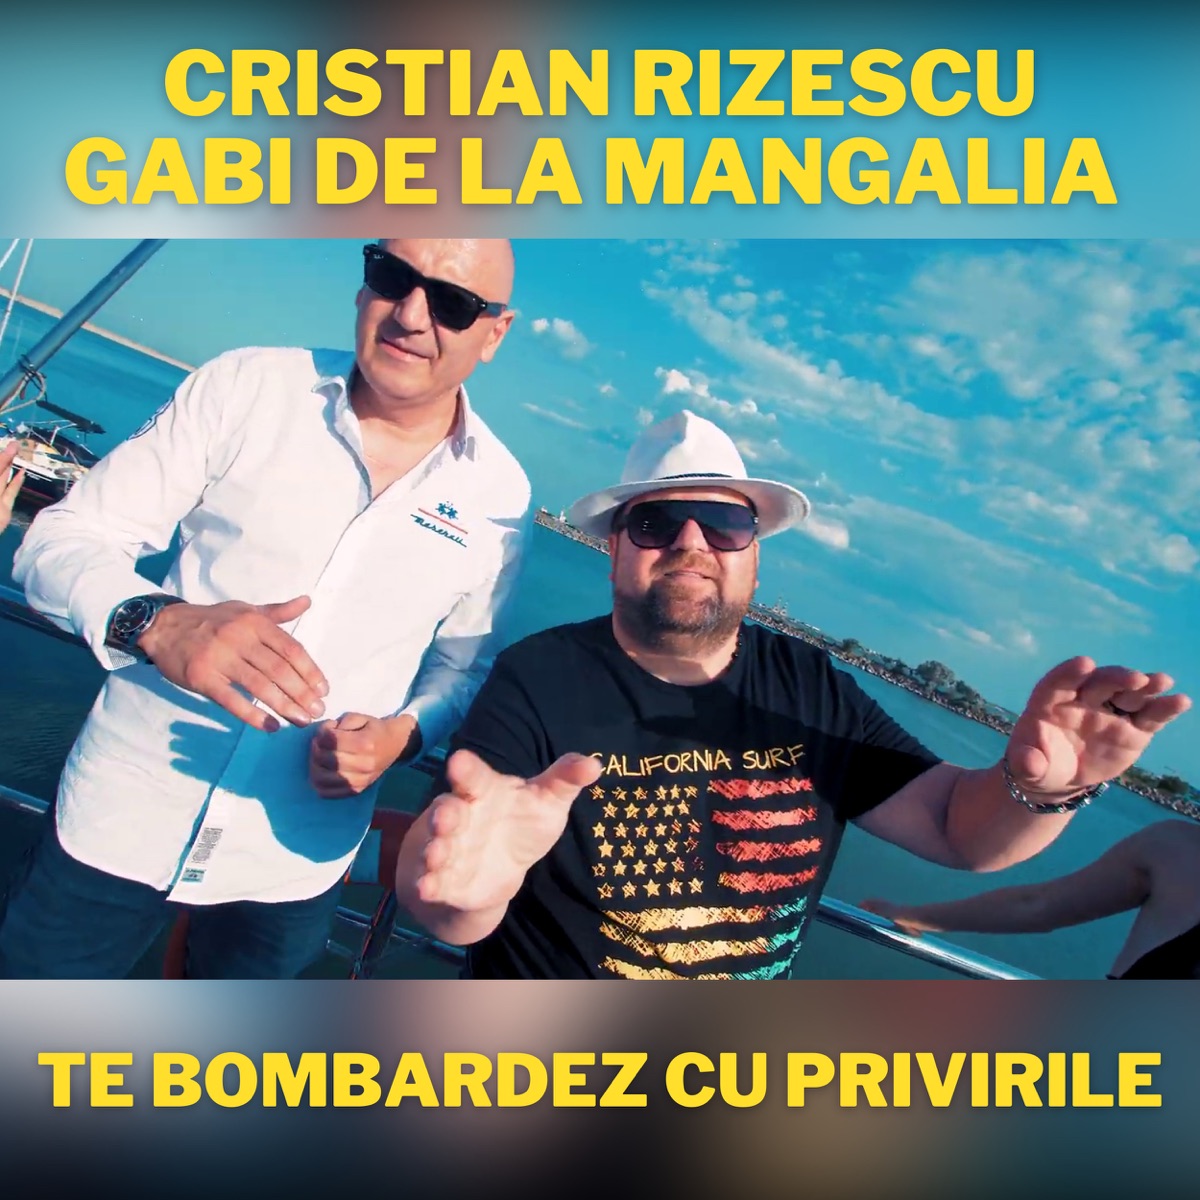 Domnii Astia La Costum - Single by Cristian Rizescu on Apple Music